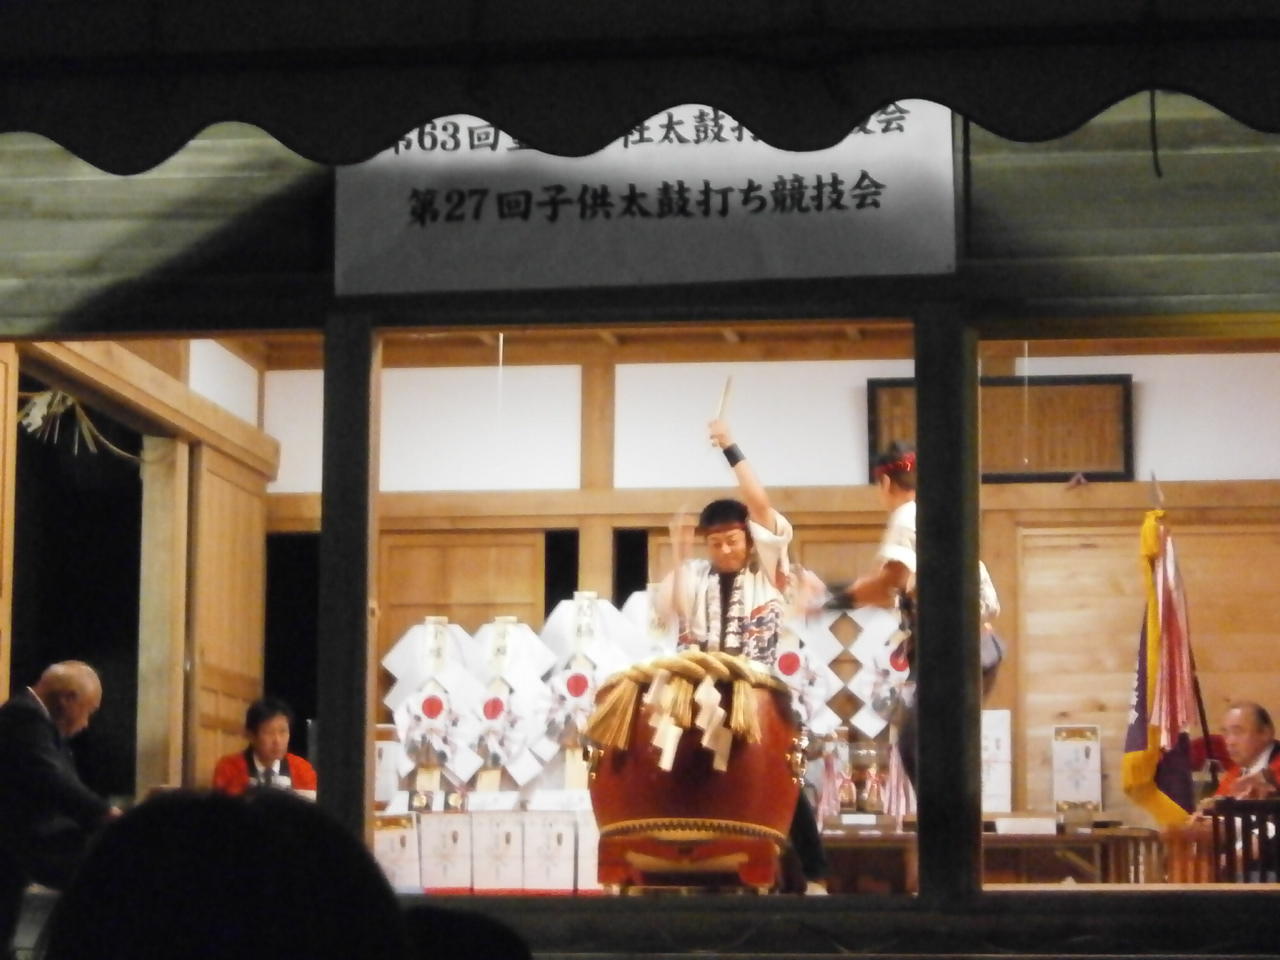 重蔵神社太鼓打ち競技大会2013